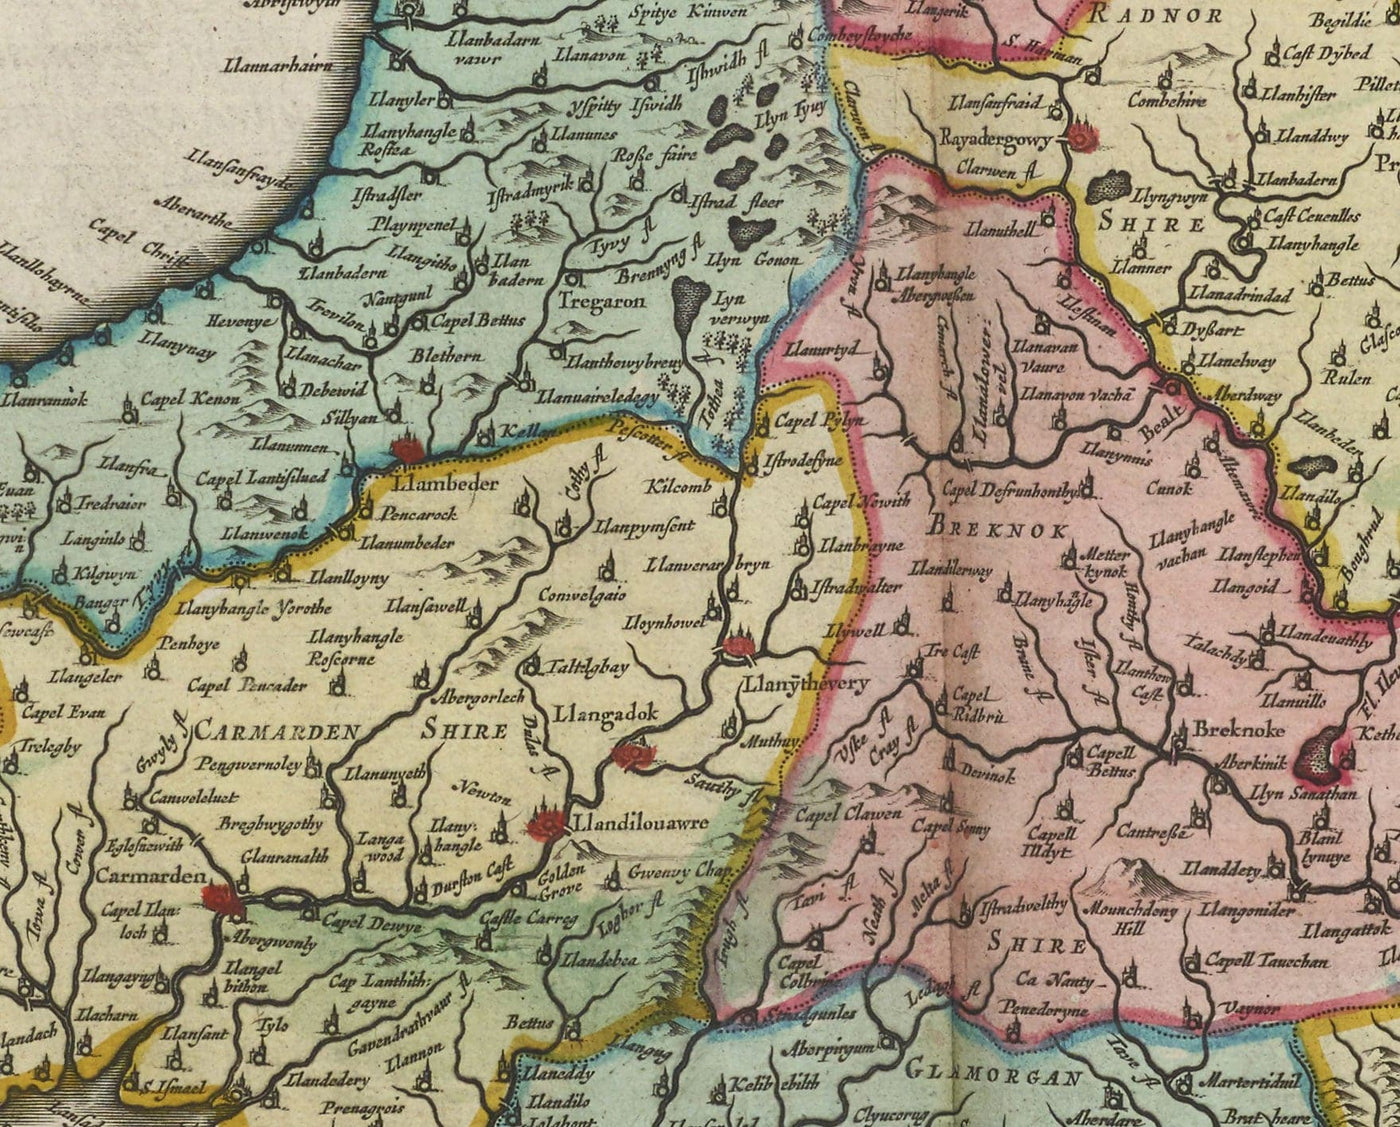 Seltene alte Karte von Wales von Jean Blaeu, 1645 - aus dem Theatrum Orbis Terrarum Sive Atlas Novus